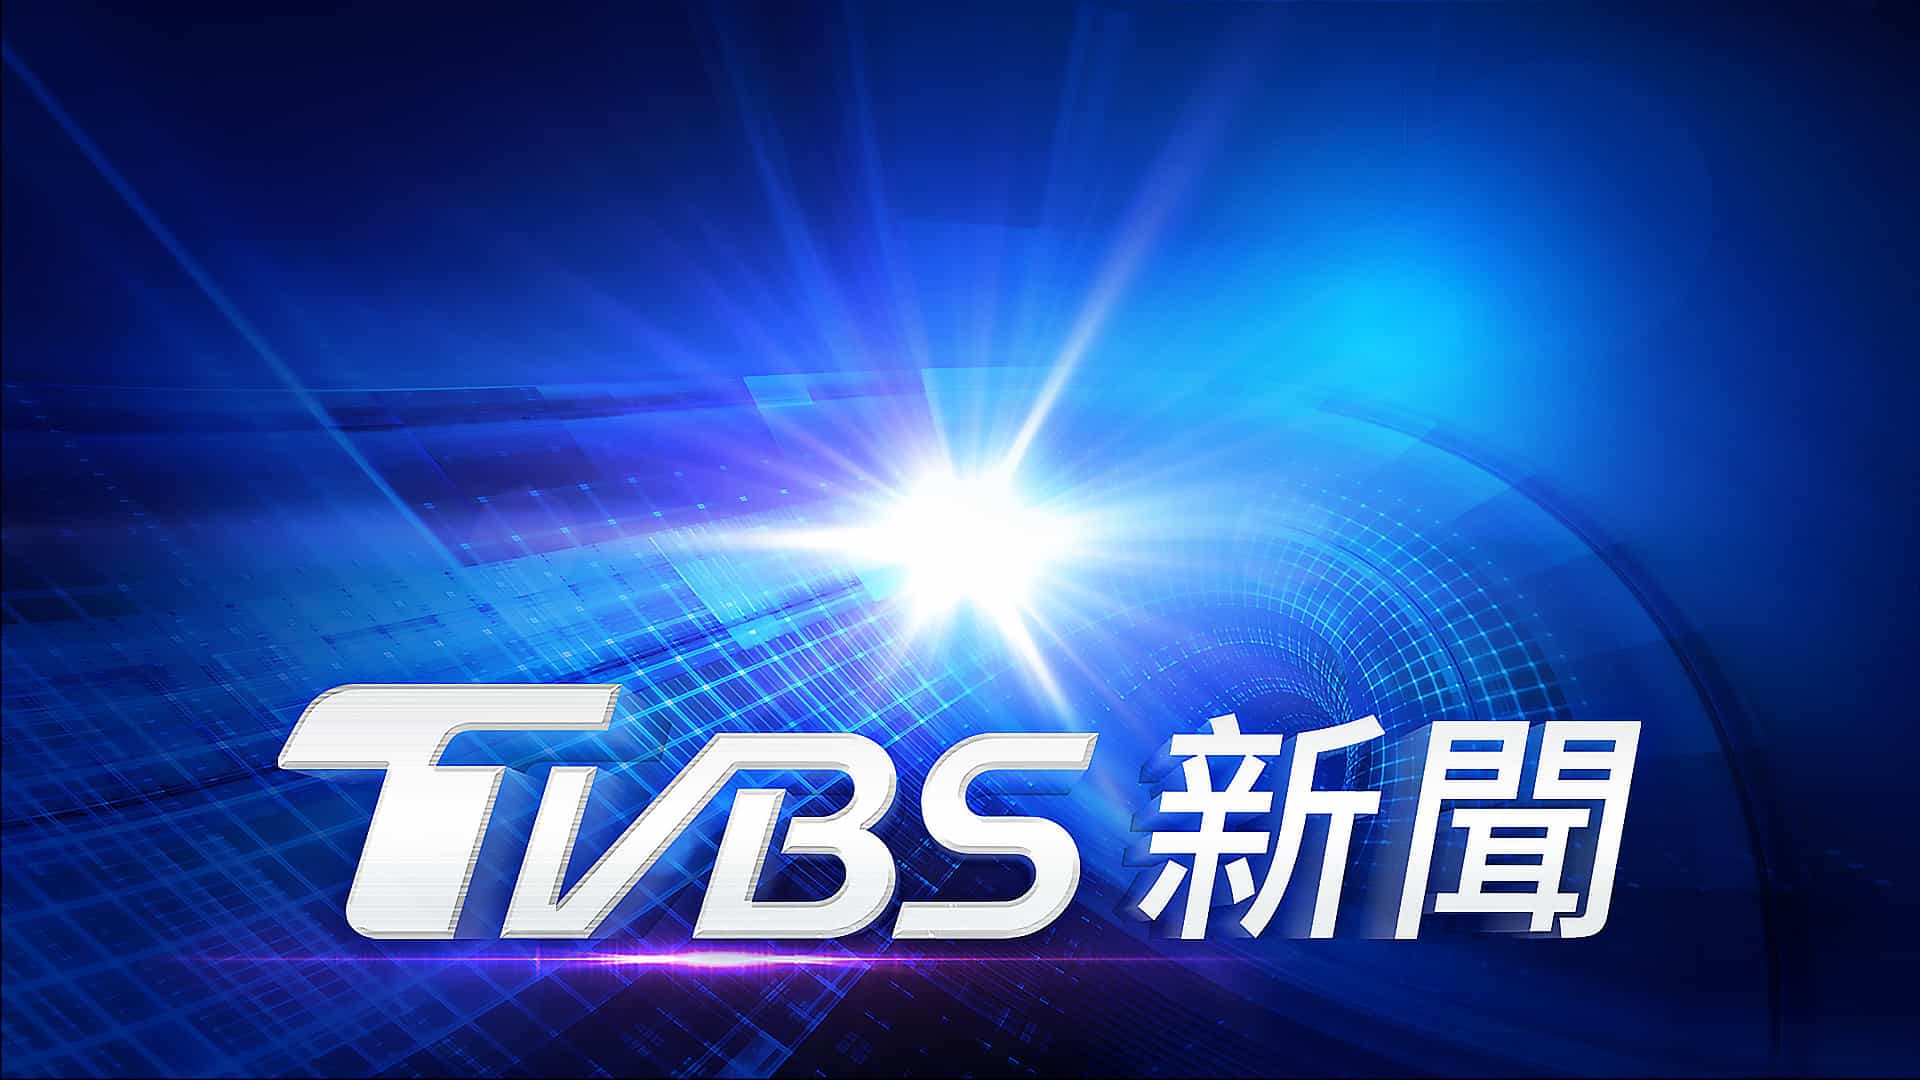 今日似乎又出現電視台TVBS被駭入侵疑慮